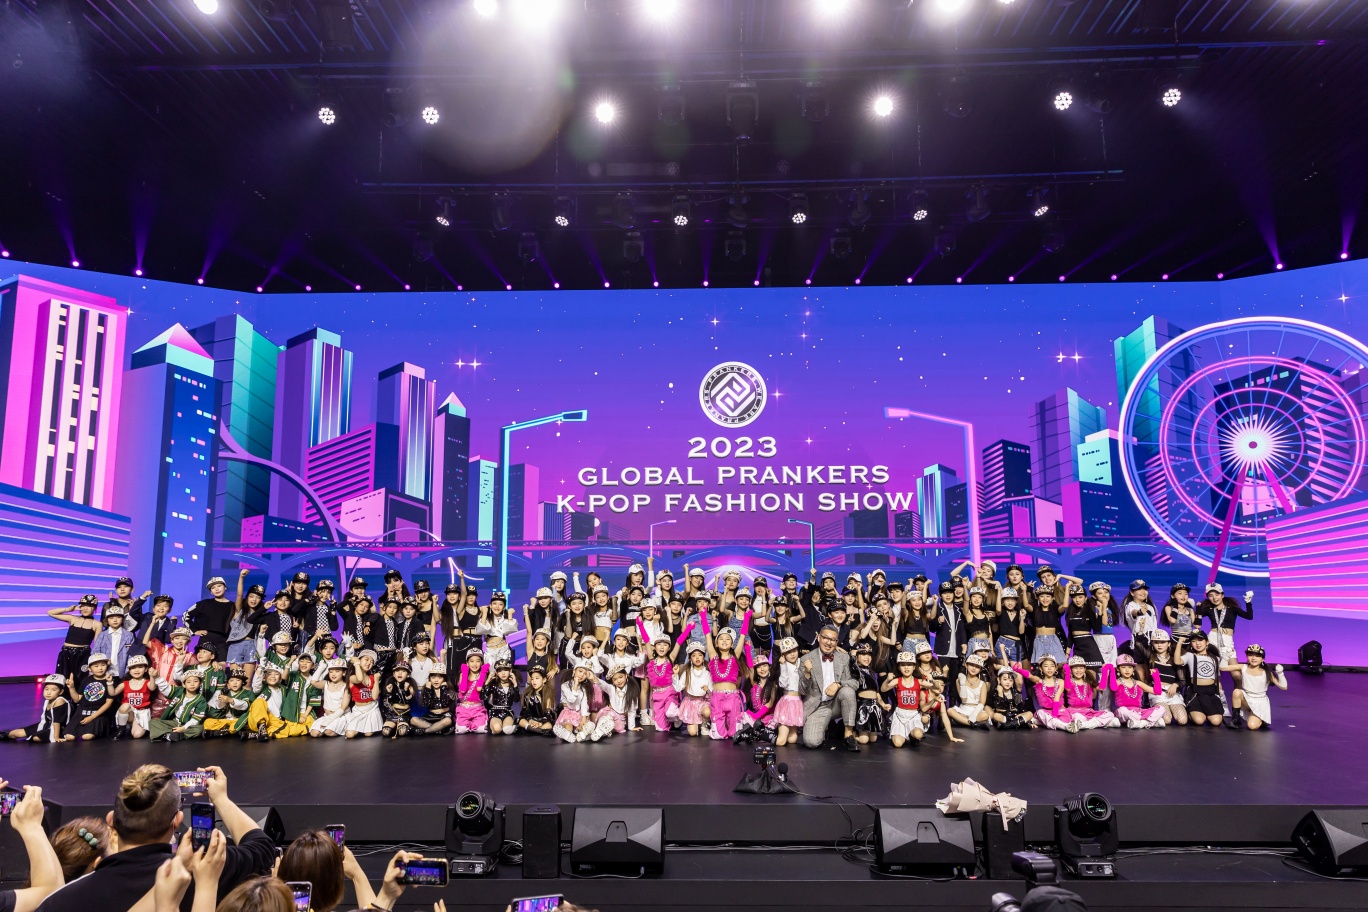 110명의 아이돌 지망생들의 축제  프랭커스 글로벌 패션쇼